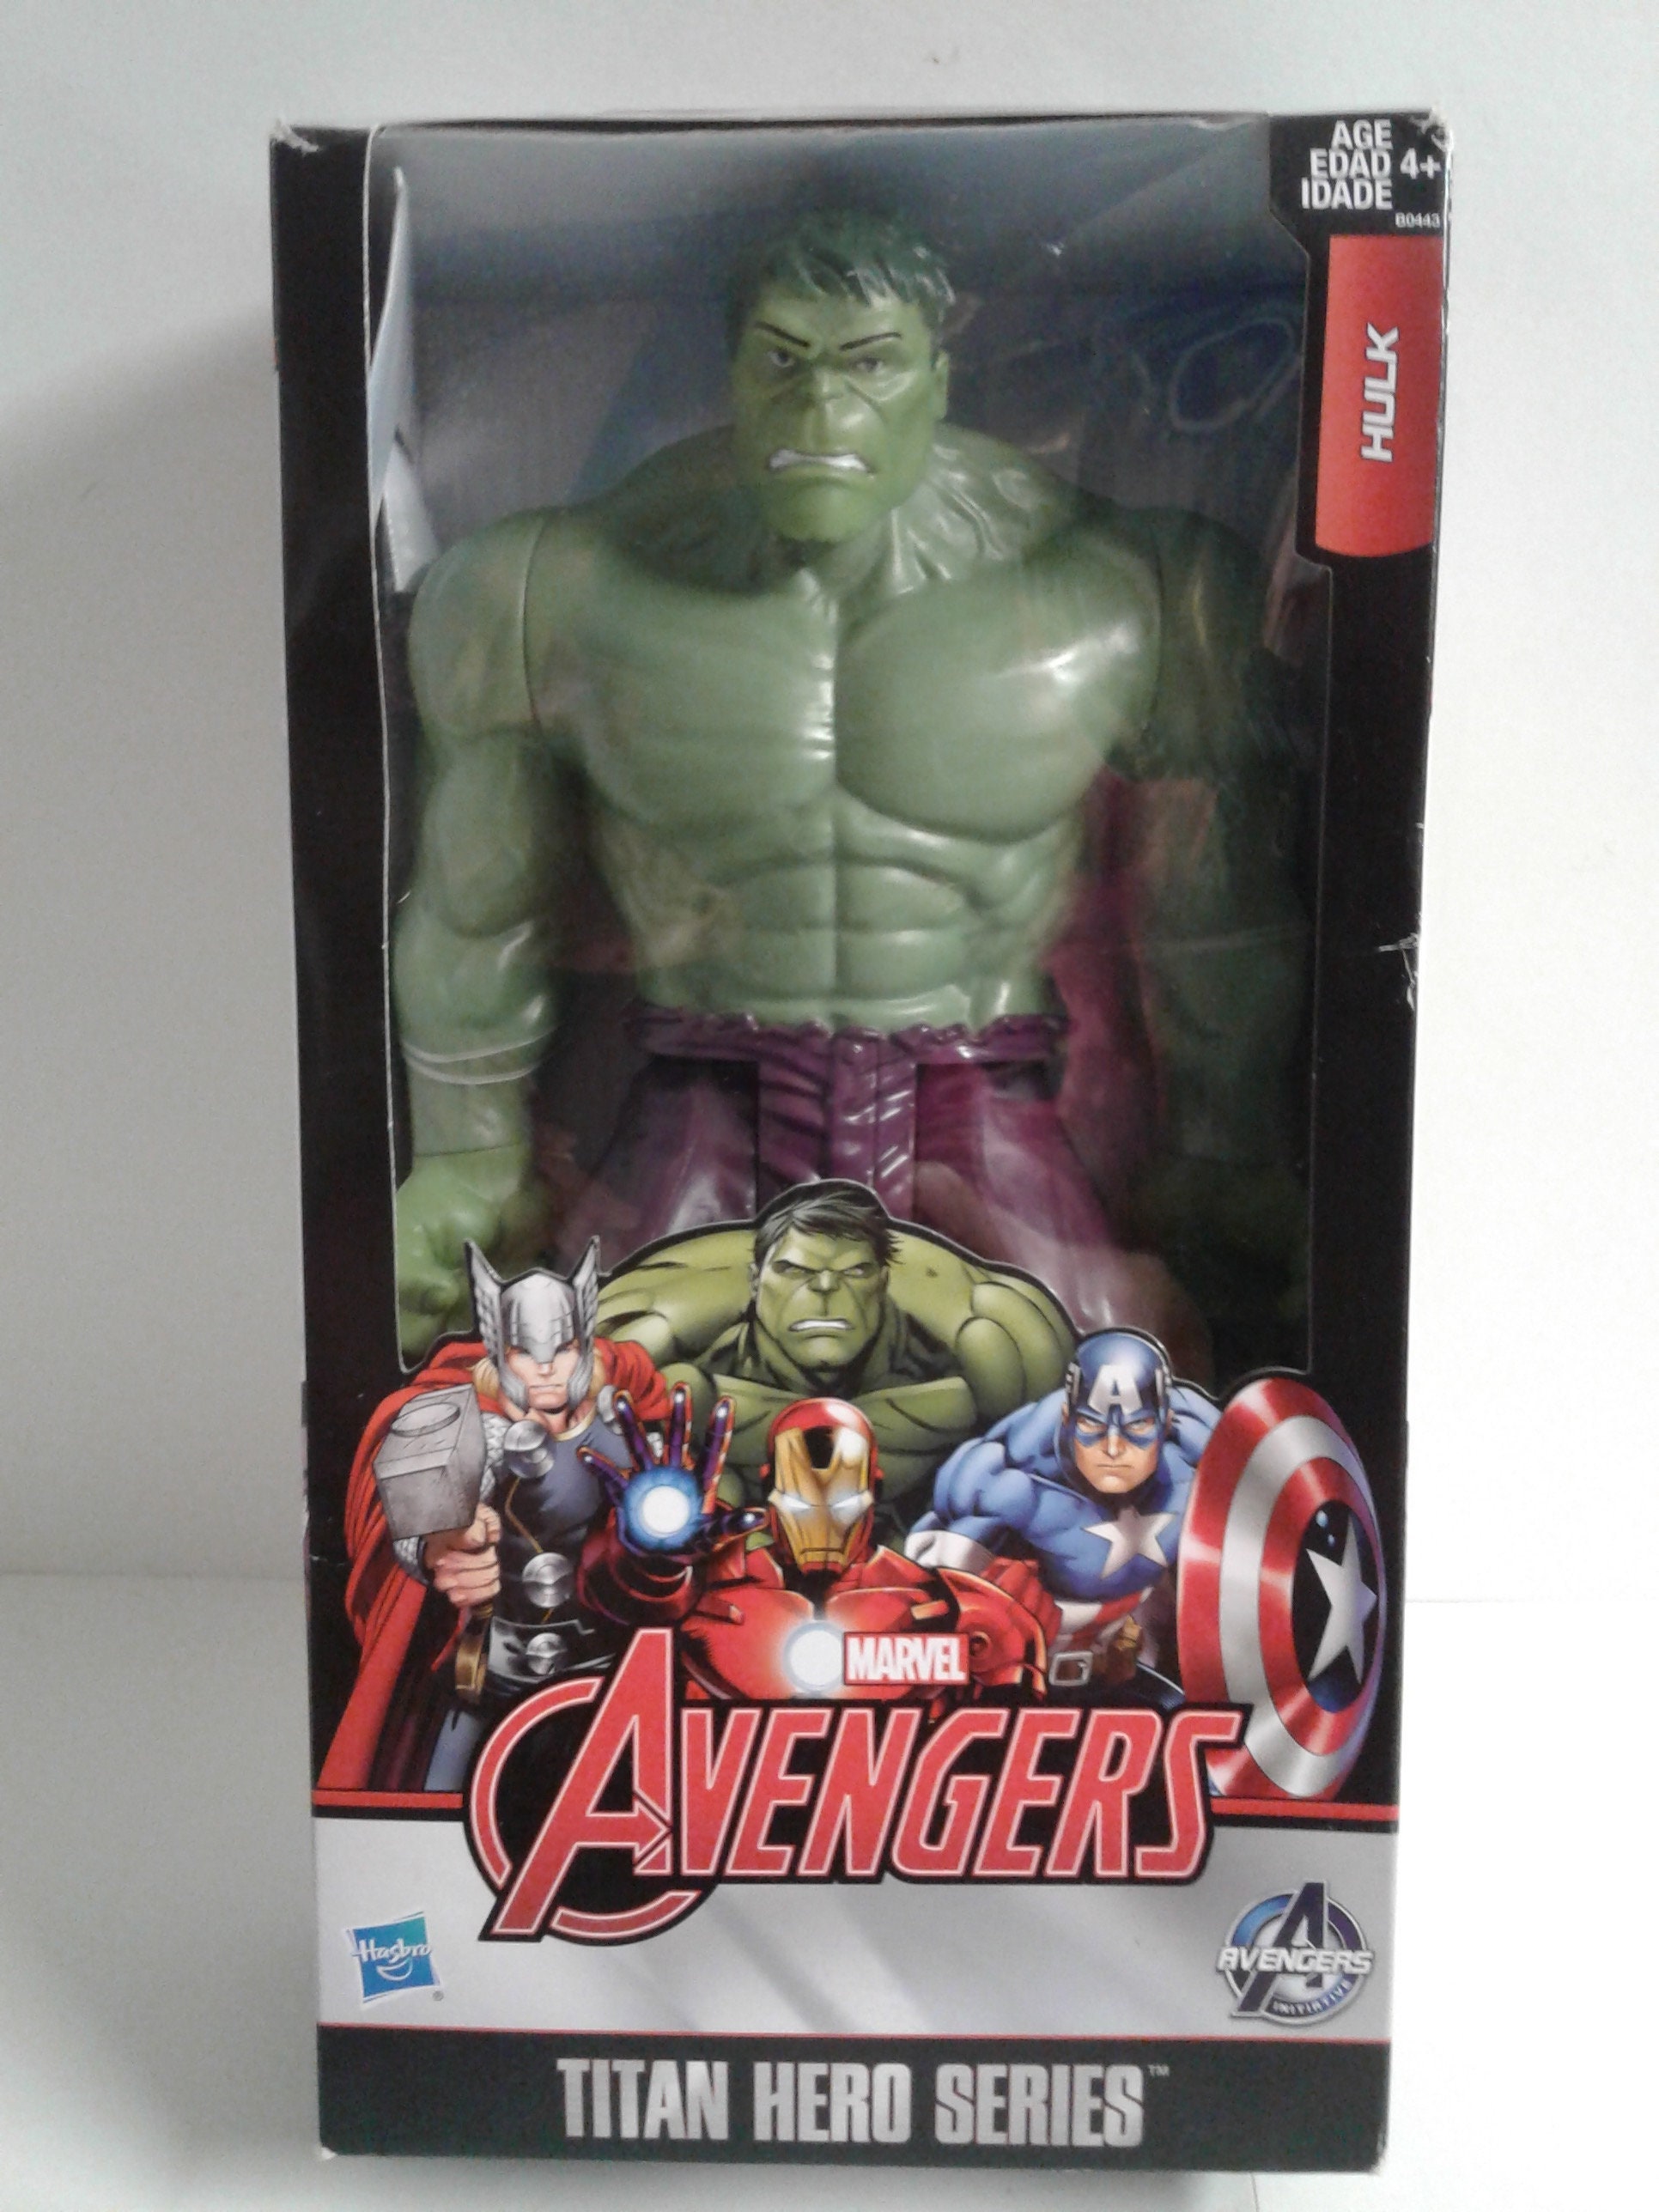 Lot de figurine Marvel Avengers super-héros 30 cm Hasbro - MARVEL AVENGERS